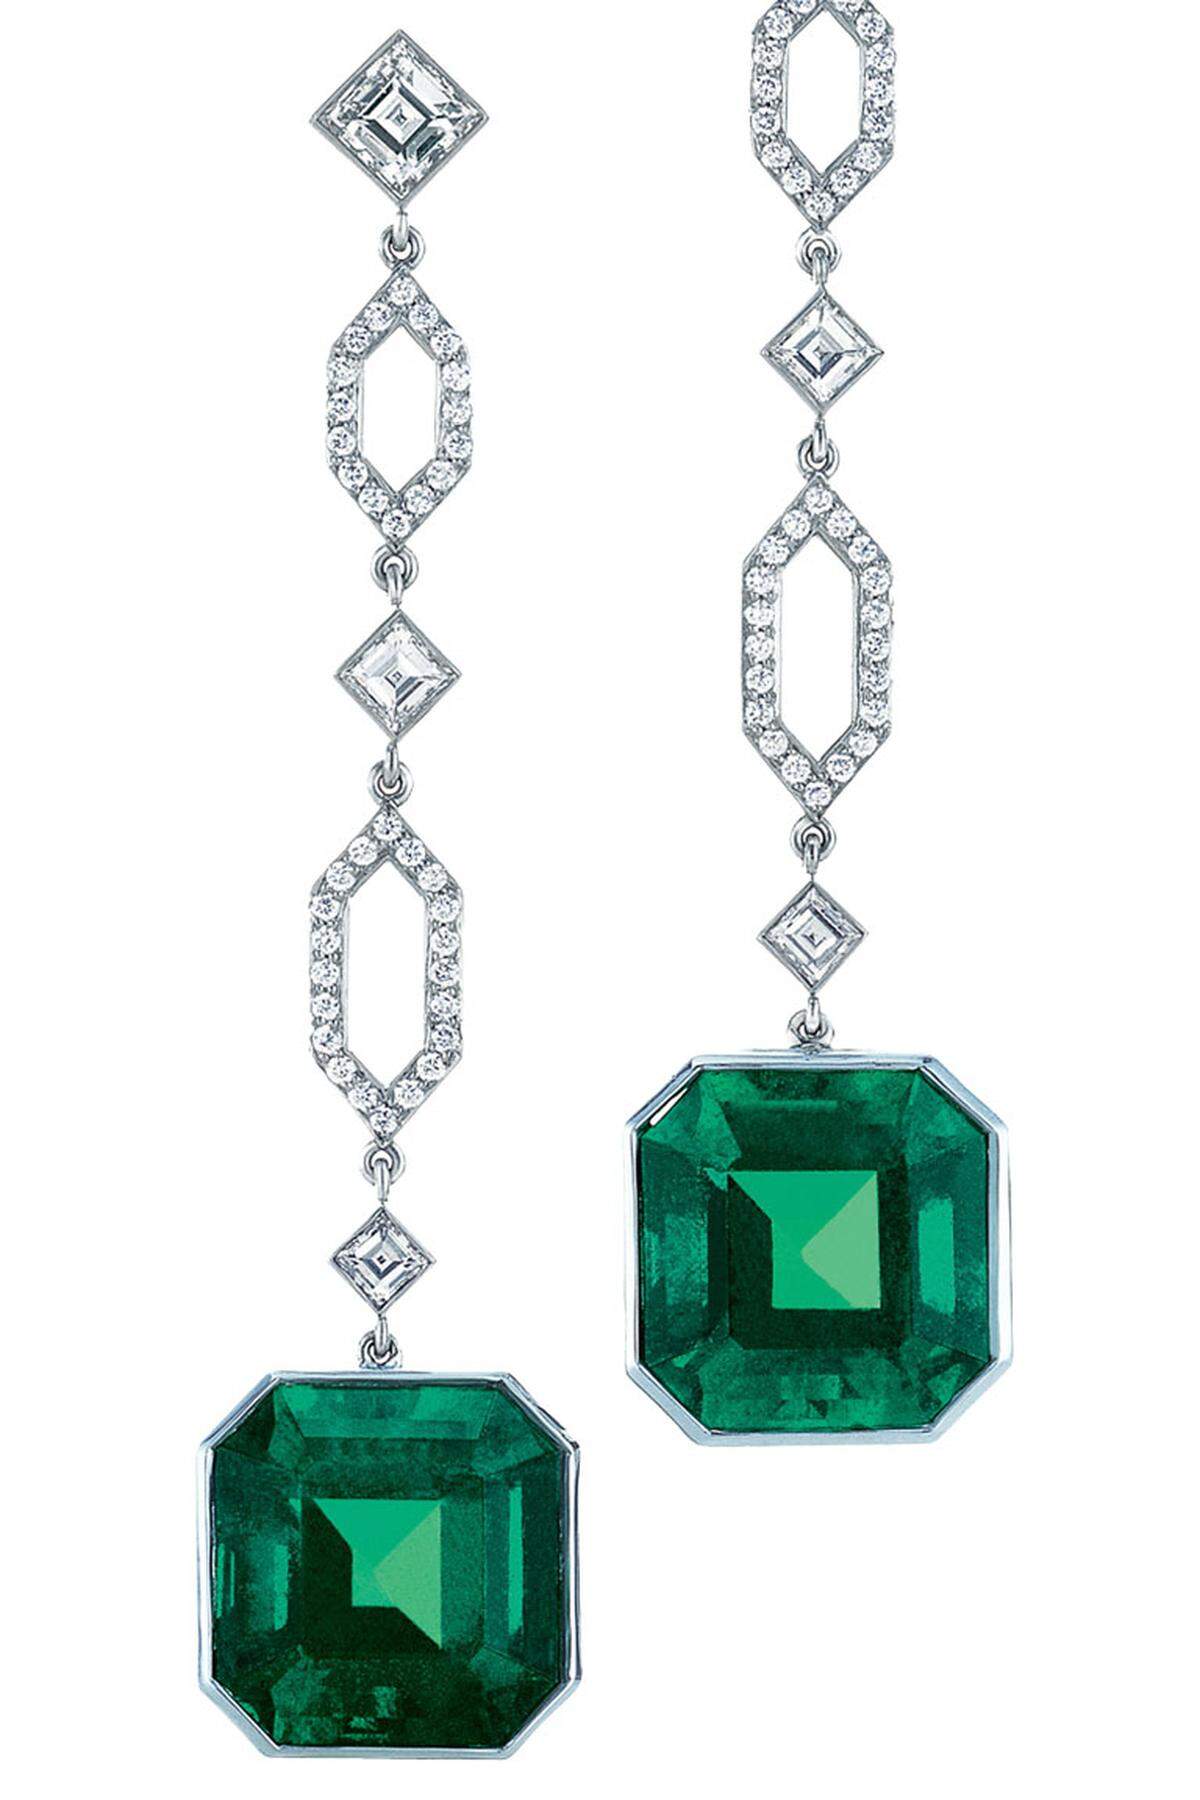 Bei Tiffany findet man, dass Smaragden die kantige Form gut steht. Die Form wiederholt man zur Sicherheit auch gleich bei den Diamanten.